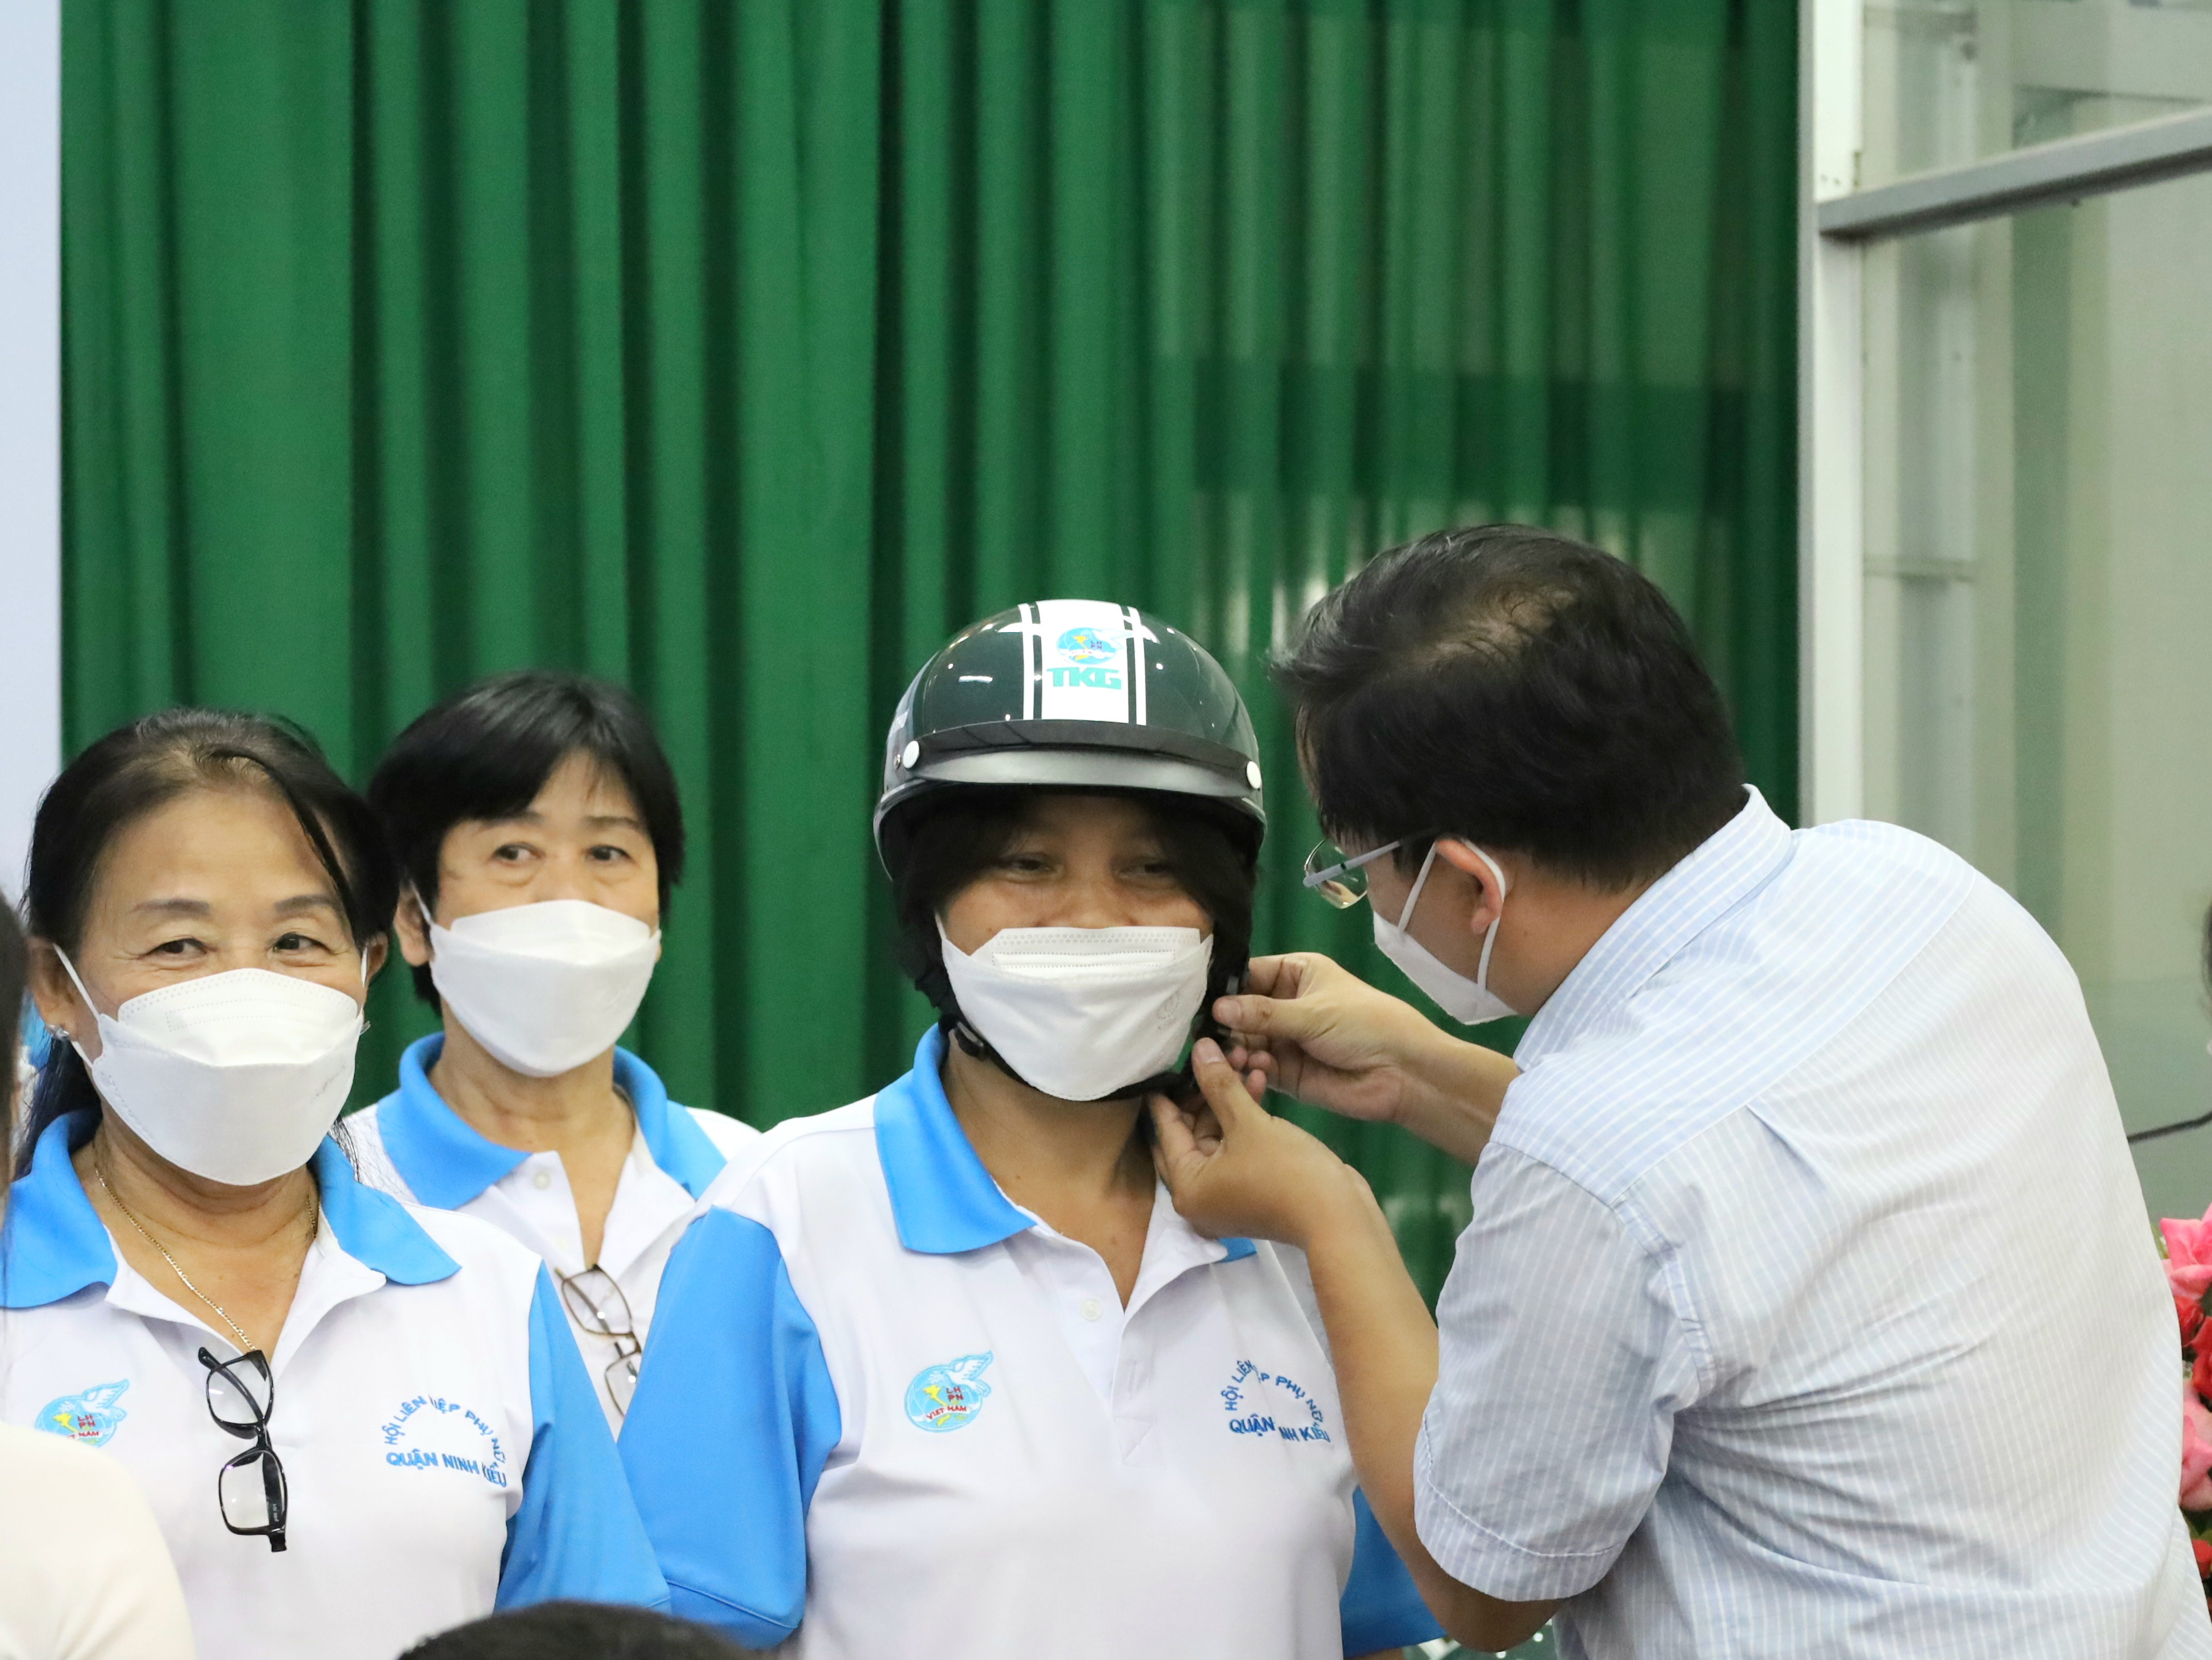 Hội LHPN phường An Bình cũng vận động Công ty TAEKWANG Cần Thơ trao tặng 100 nón bảo hiểm cho chị em tham gia mô hình tự quản về an toàn giao thông.